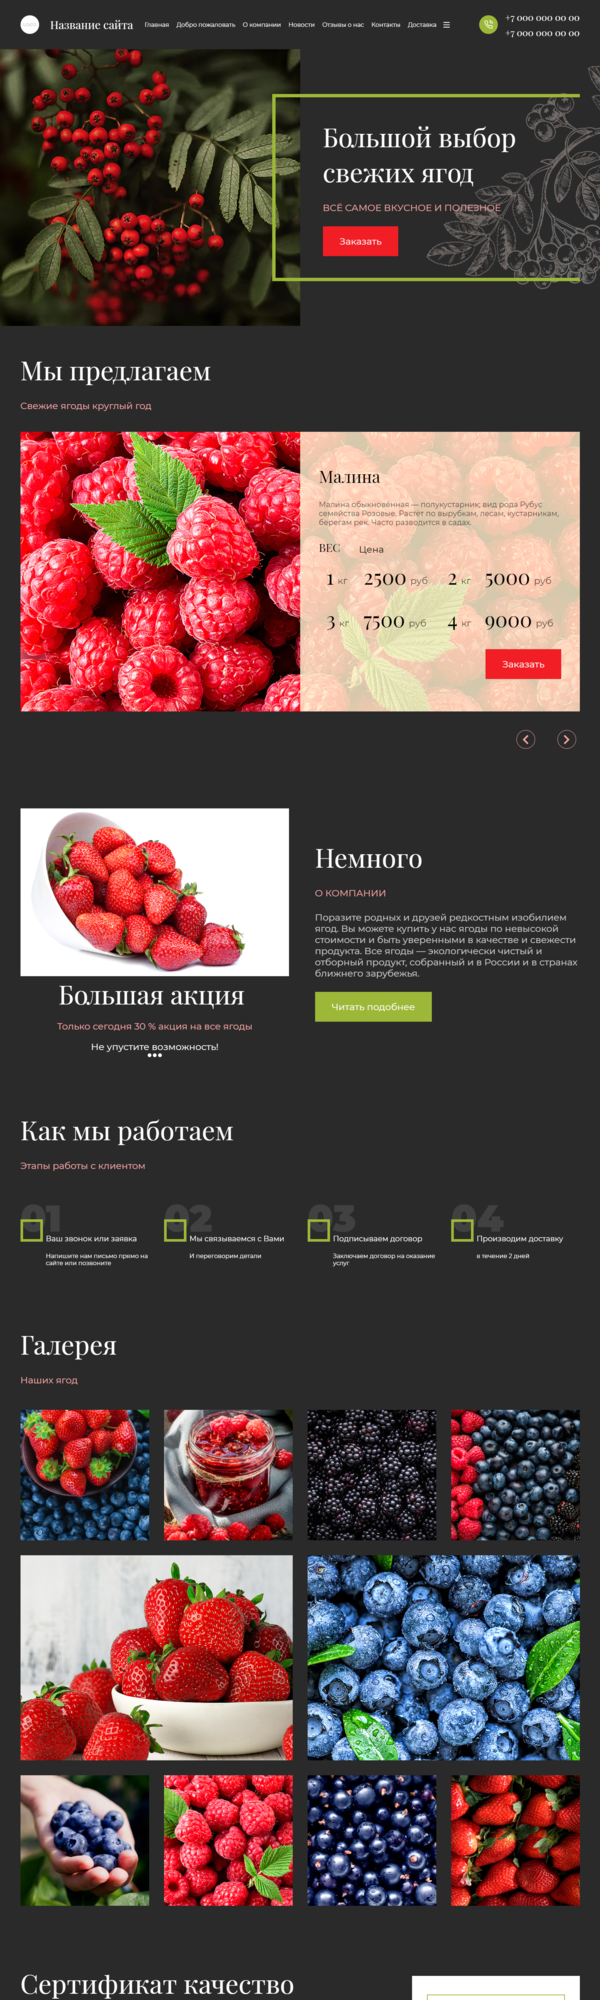 Готовый Сайт-Бизнес № 3599196 - Сайт для продажи ягод (Десктопная версия)